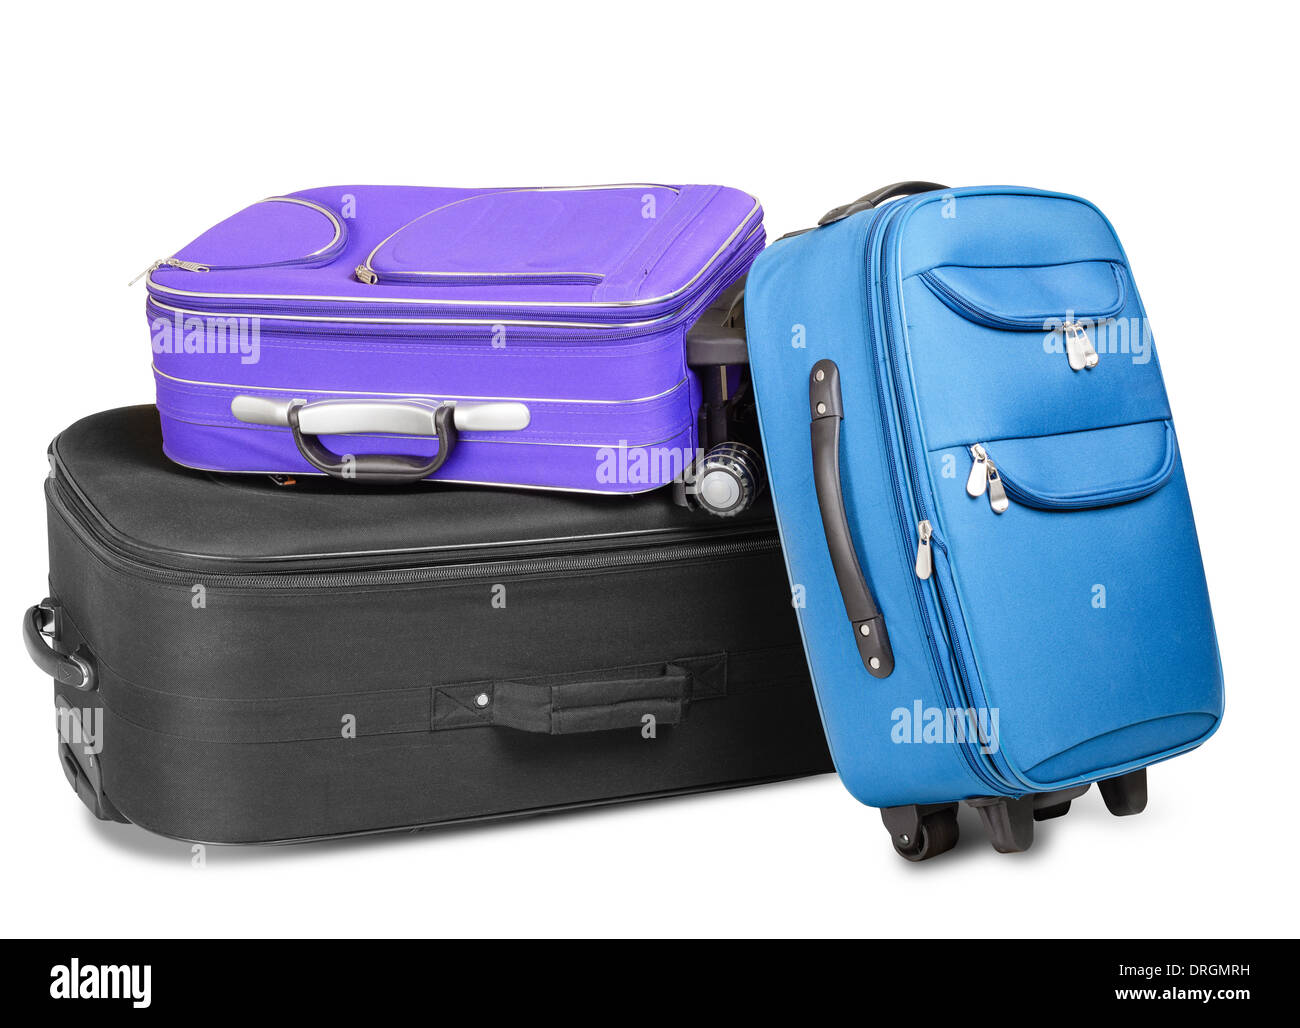 Drei volle und geschlossenen Koffer, schwarz, blau und violett, bereit für die Reise, isoliert auf weißem Hintergrund Stockfoto